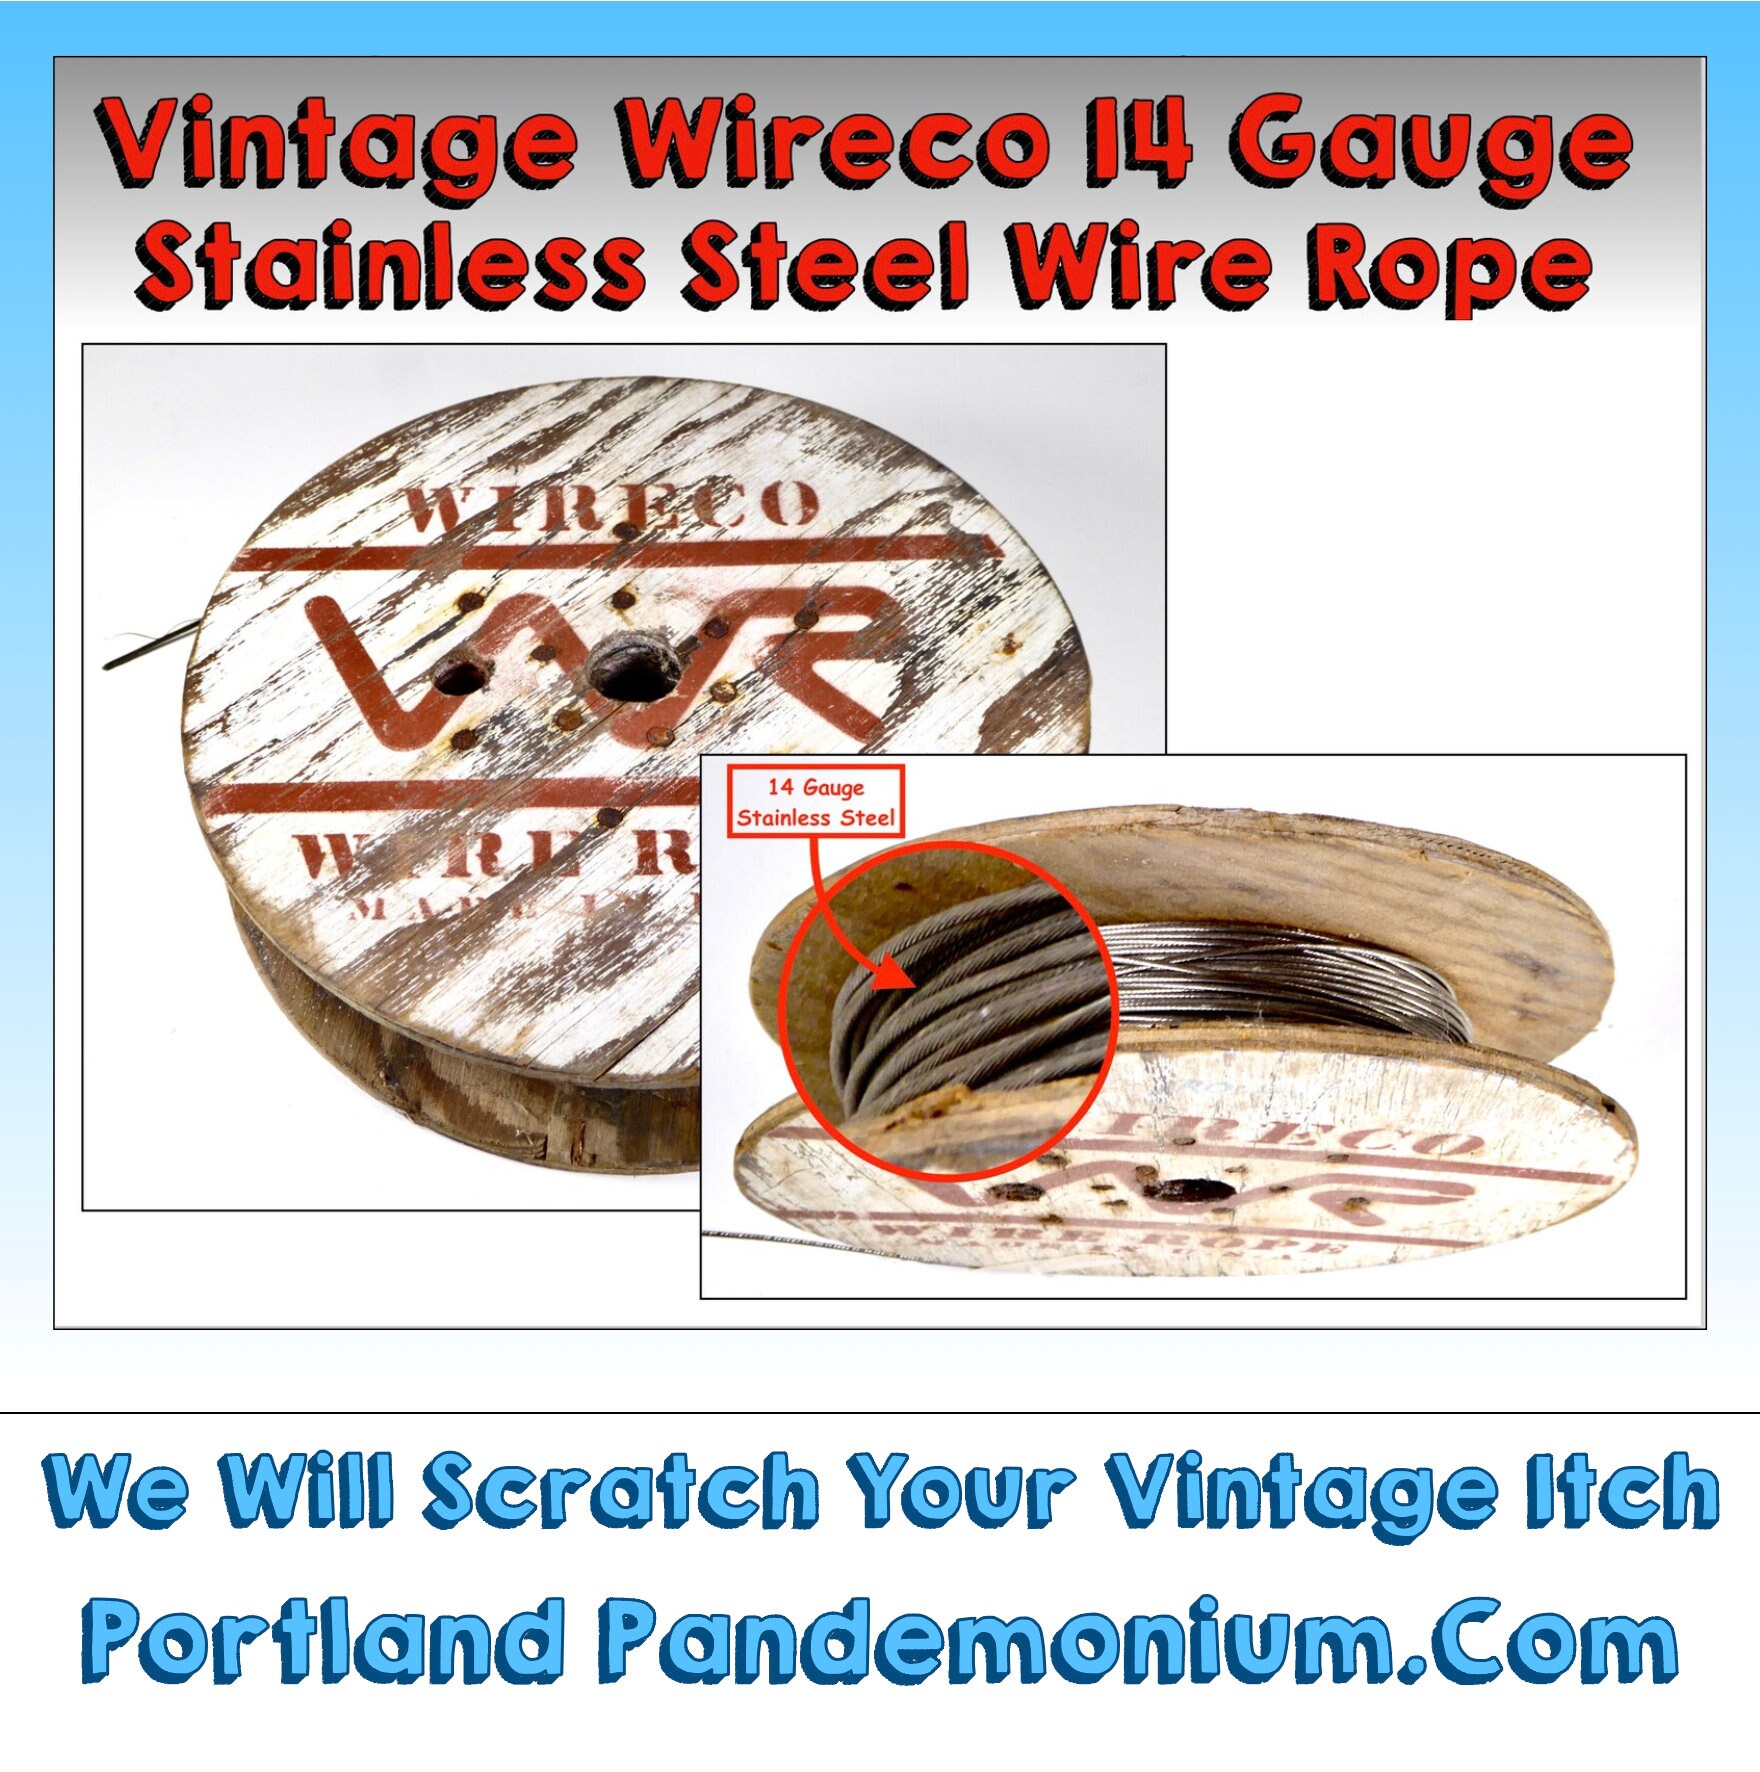 Vintage Reel of Stranded Stainless Steel Wire Rope 14 Gauge